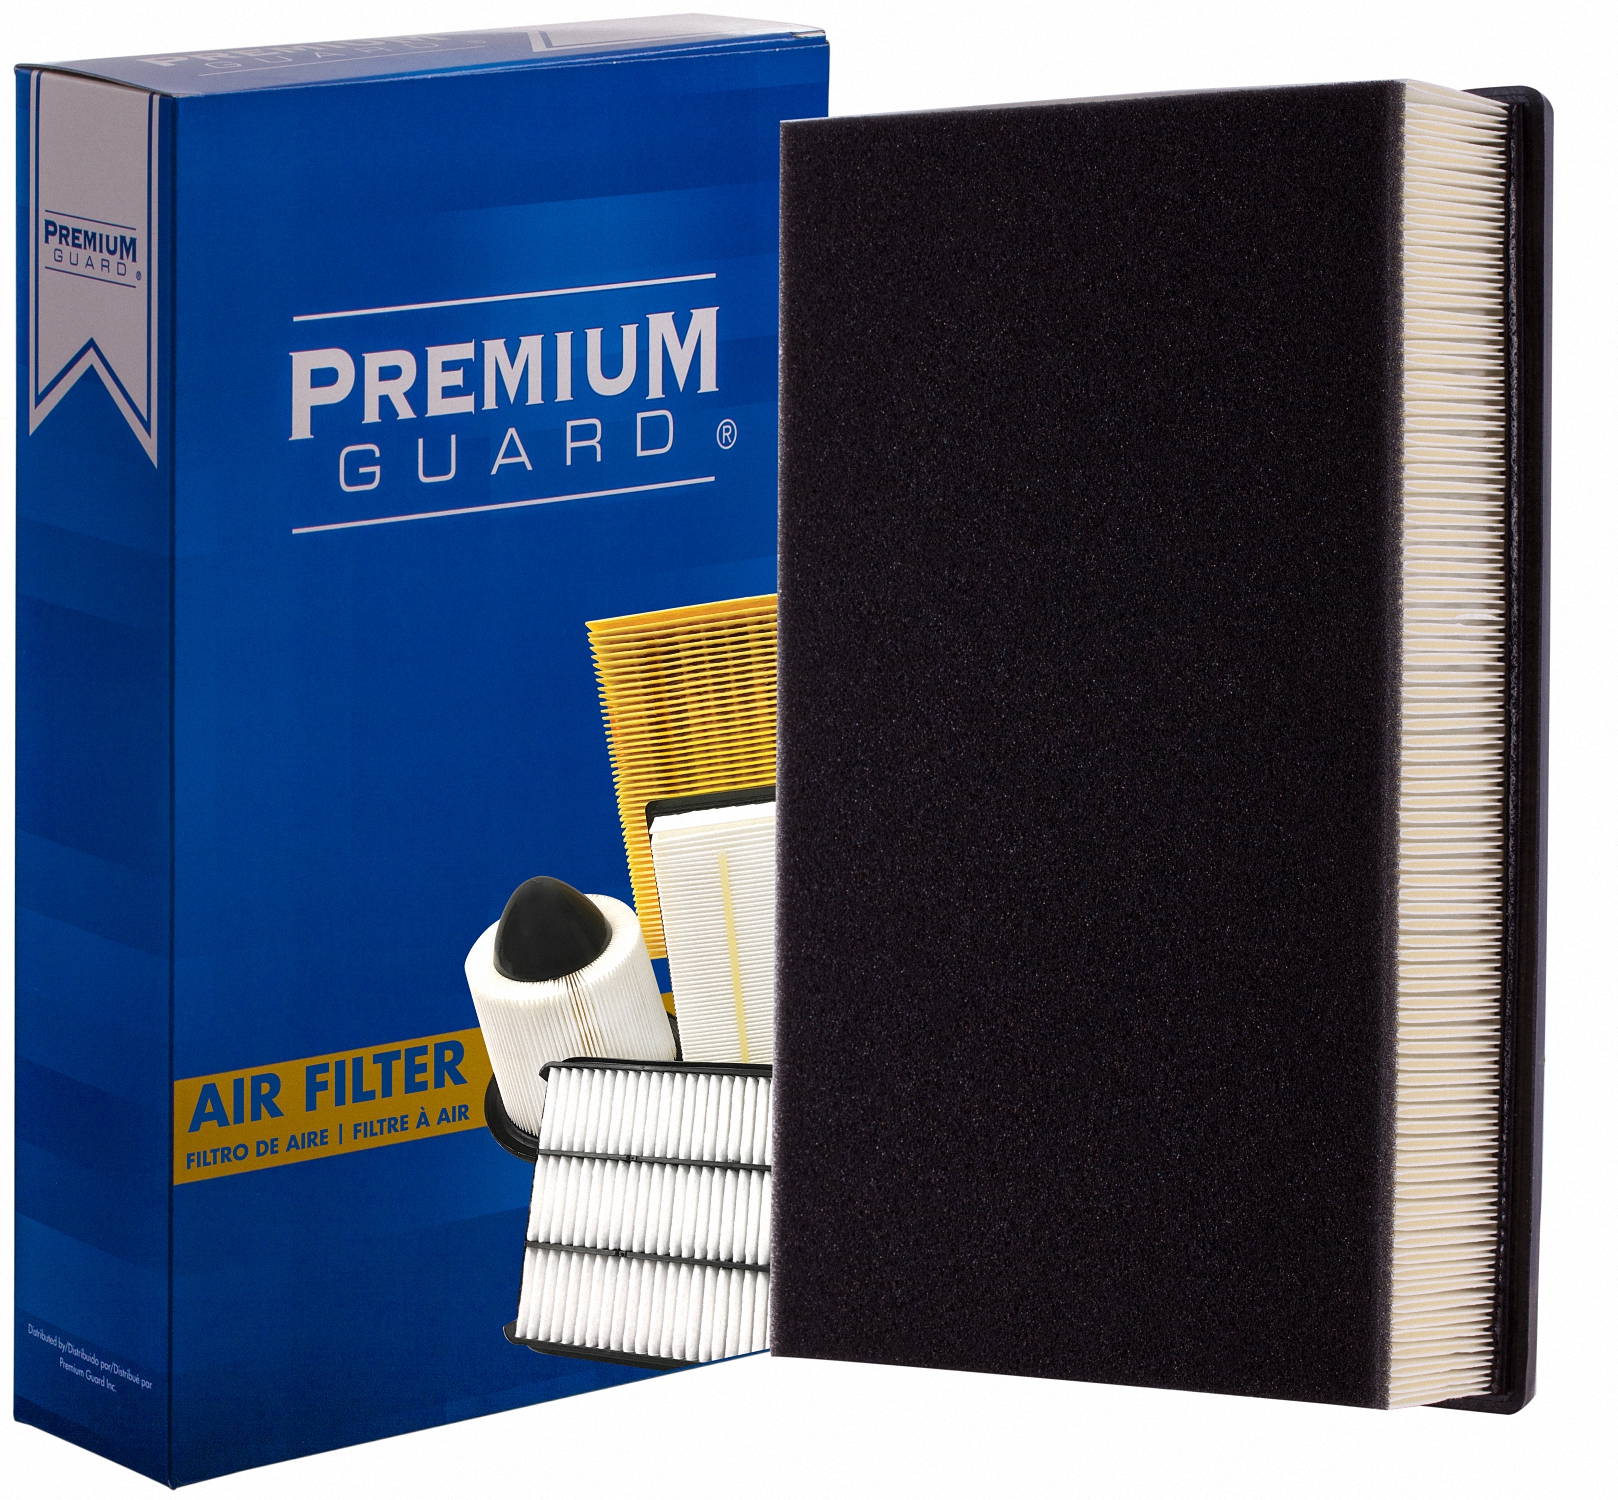 Premium Guard Air Filter P/N:Pa5558 - image 1 of 5